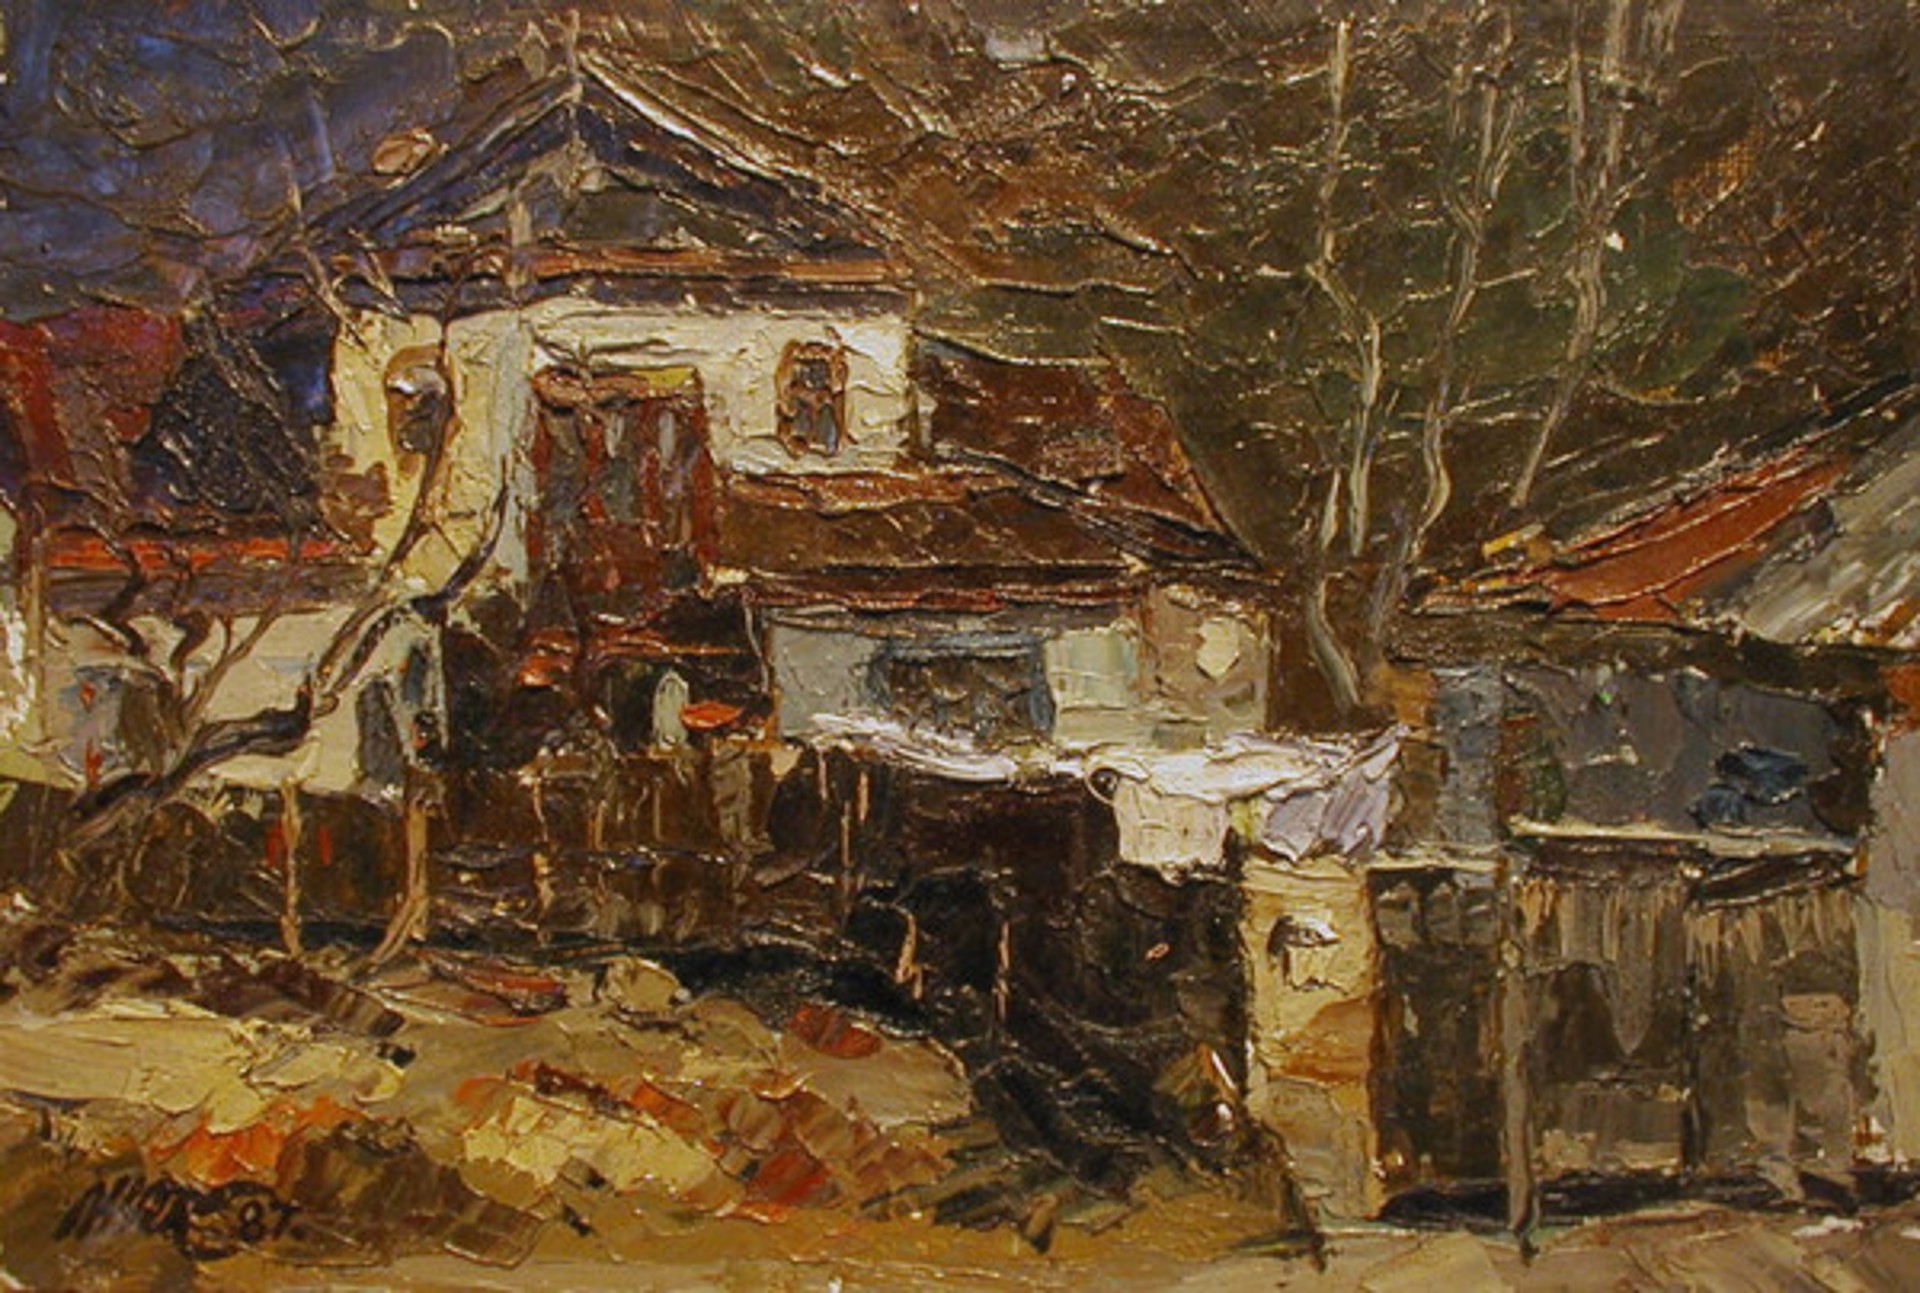 Podol by Nikolai Kononenko